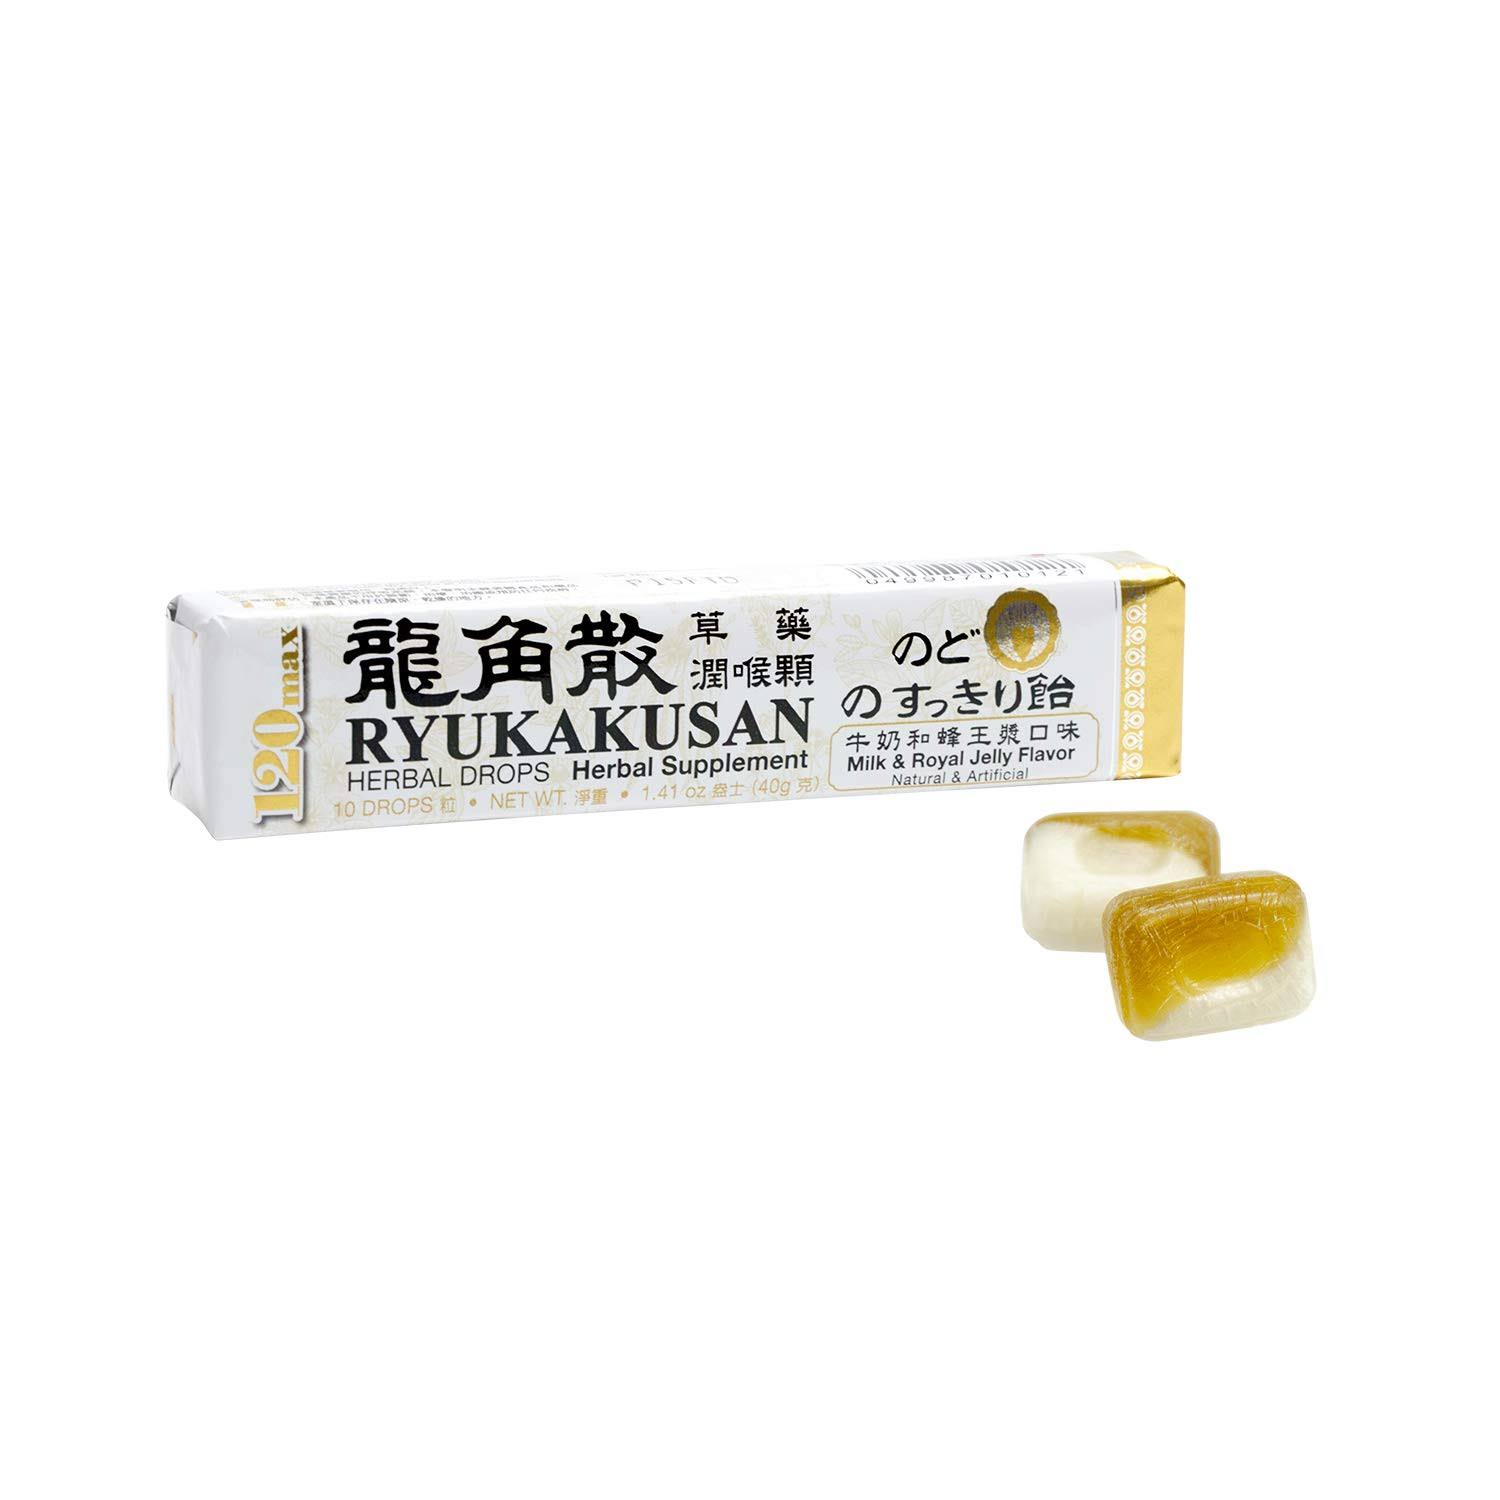 Ryukakusan Herbal Drops 120 Max Milk